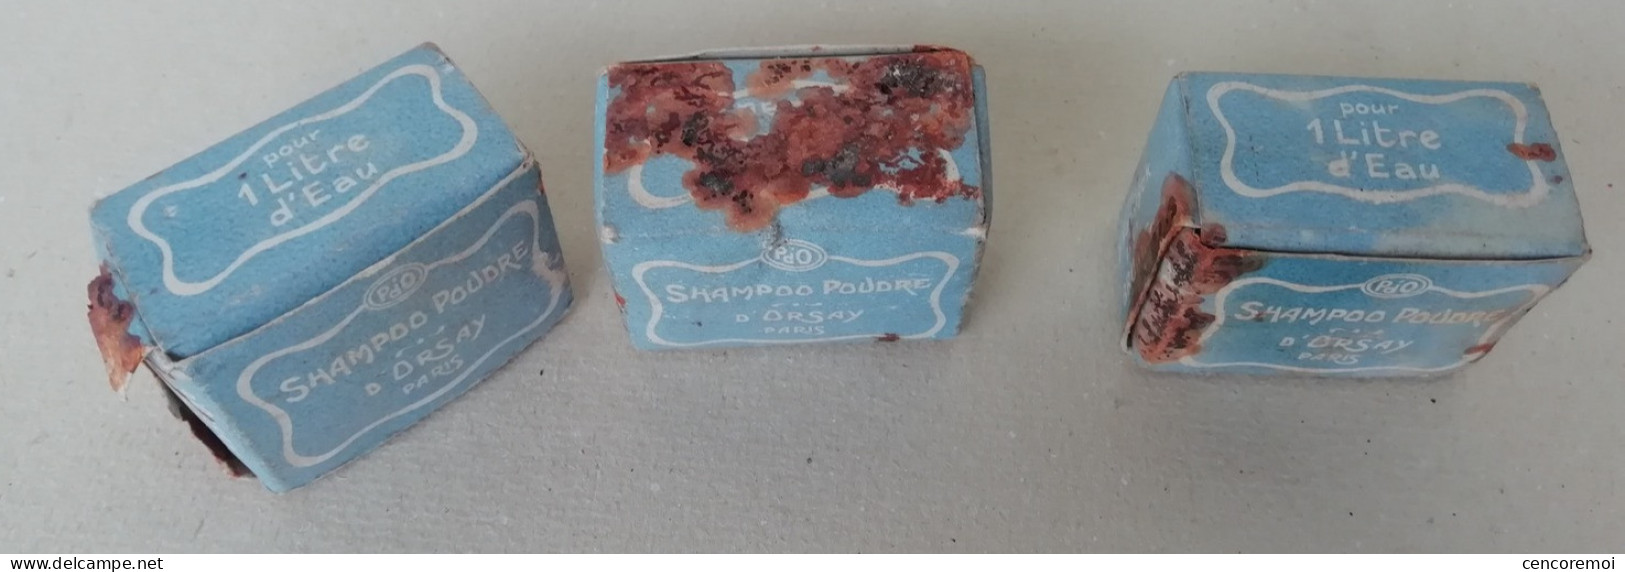 3 petits paquets de shampoo poudre parfumerie d'Orsay, cosmétique ancien de collection, shampooing miniature